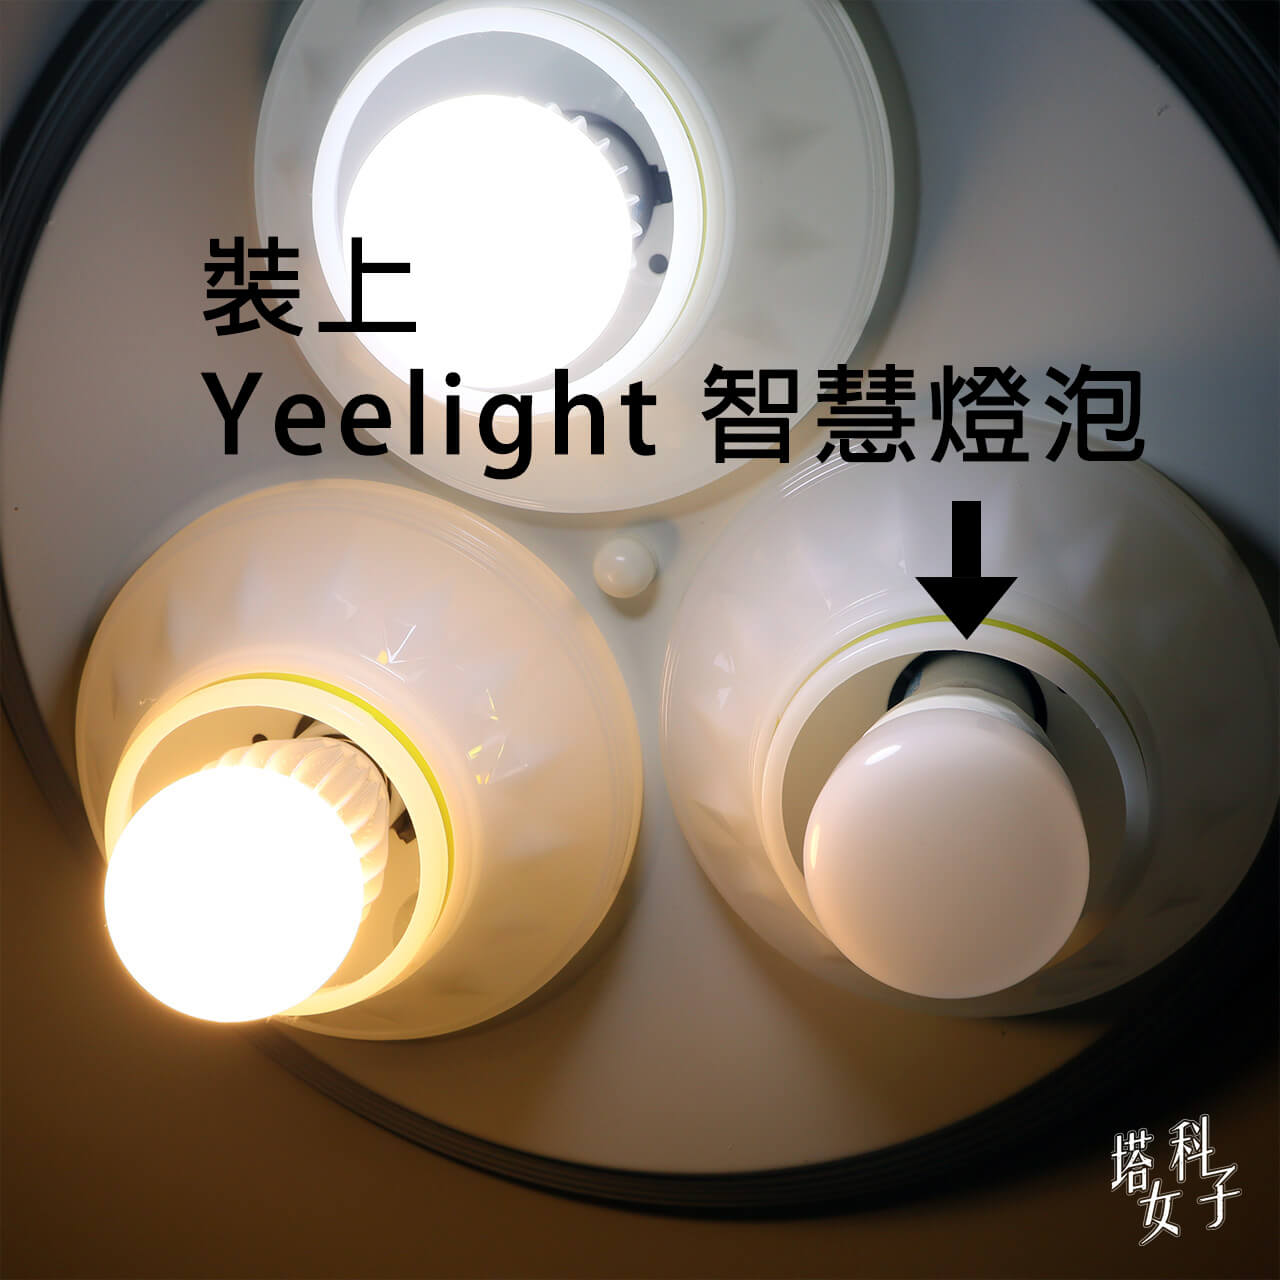 Yeelight LED 智慧燈泡彩光版開箱 - 裝上燈泡